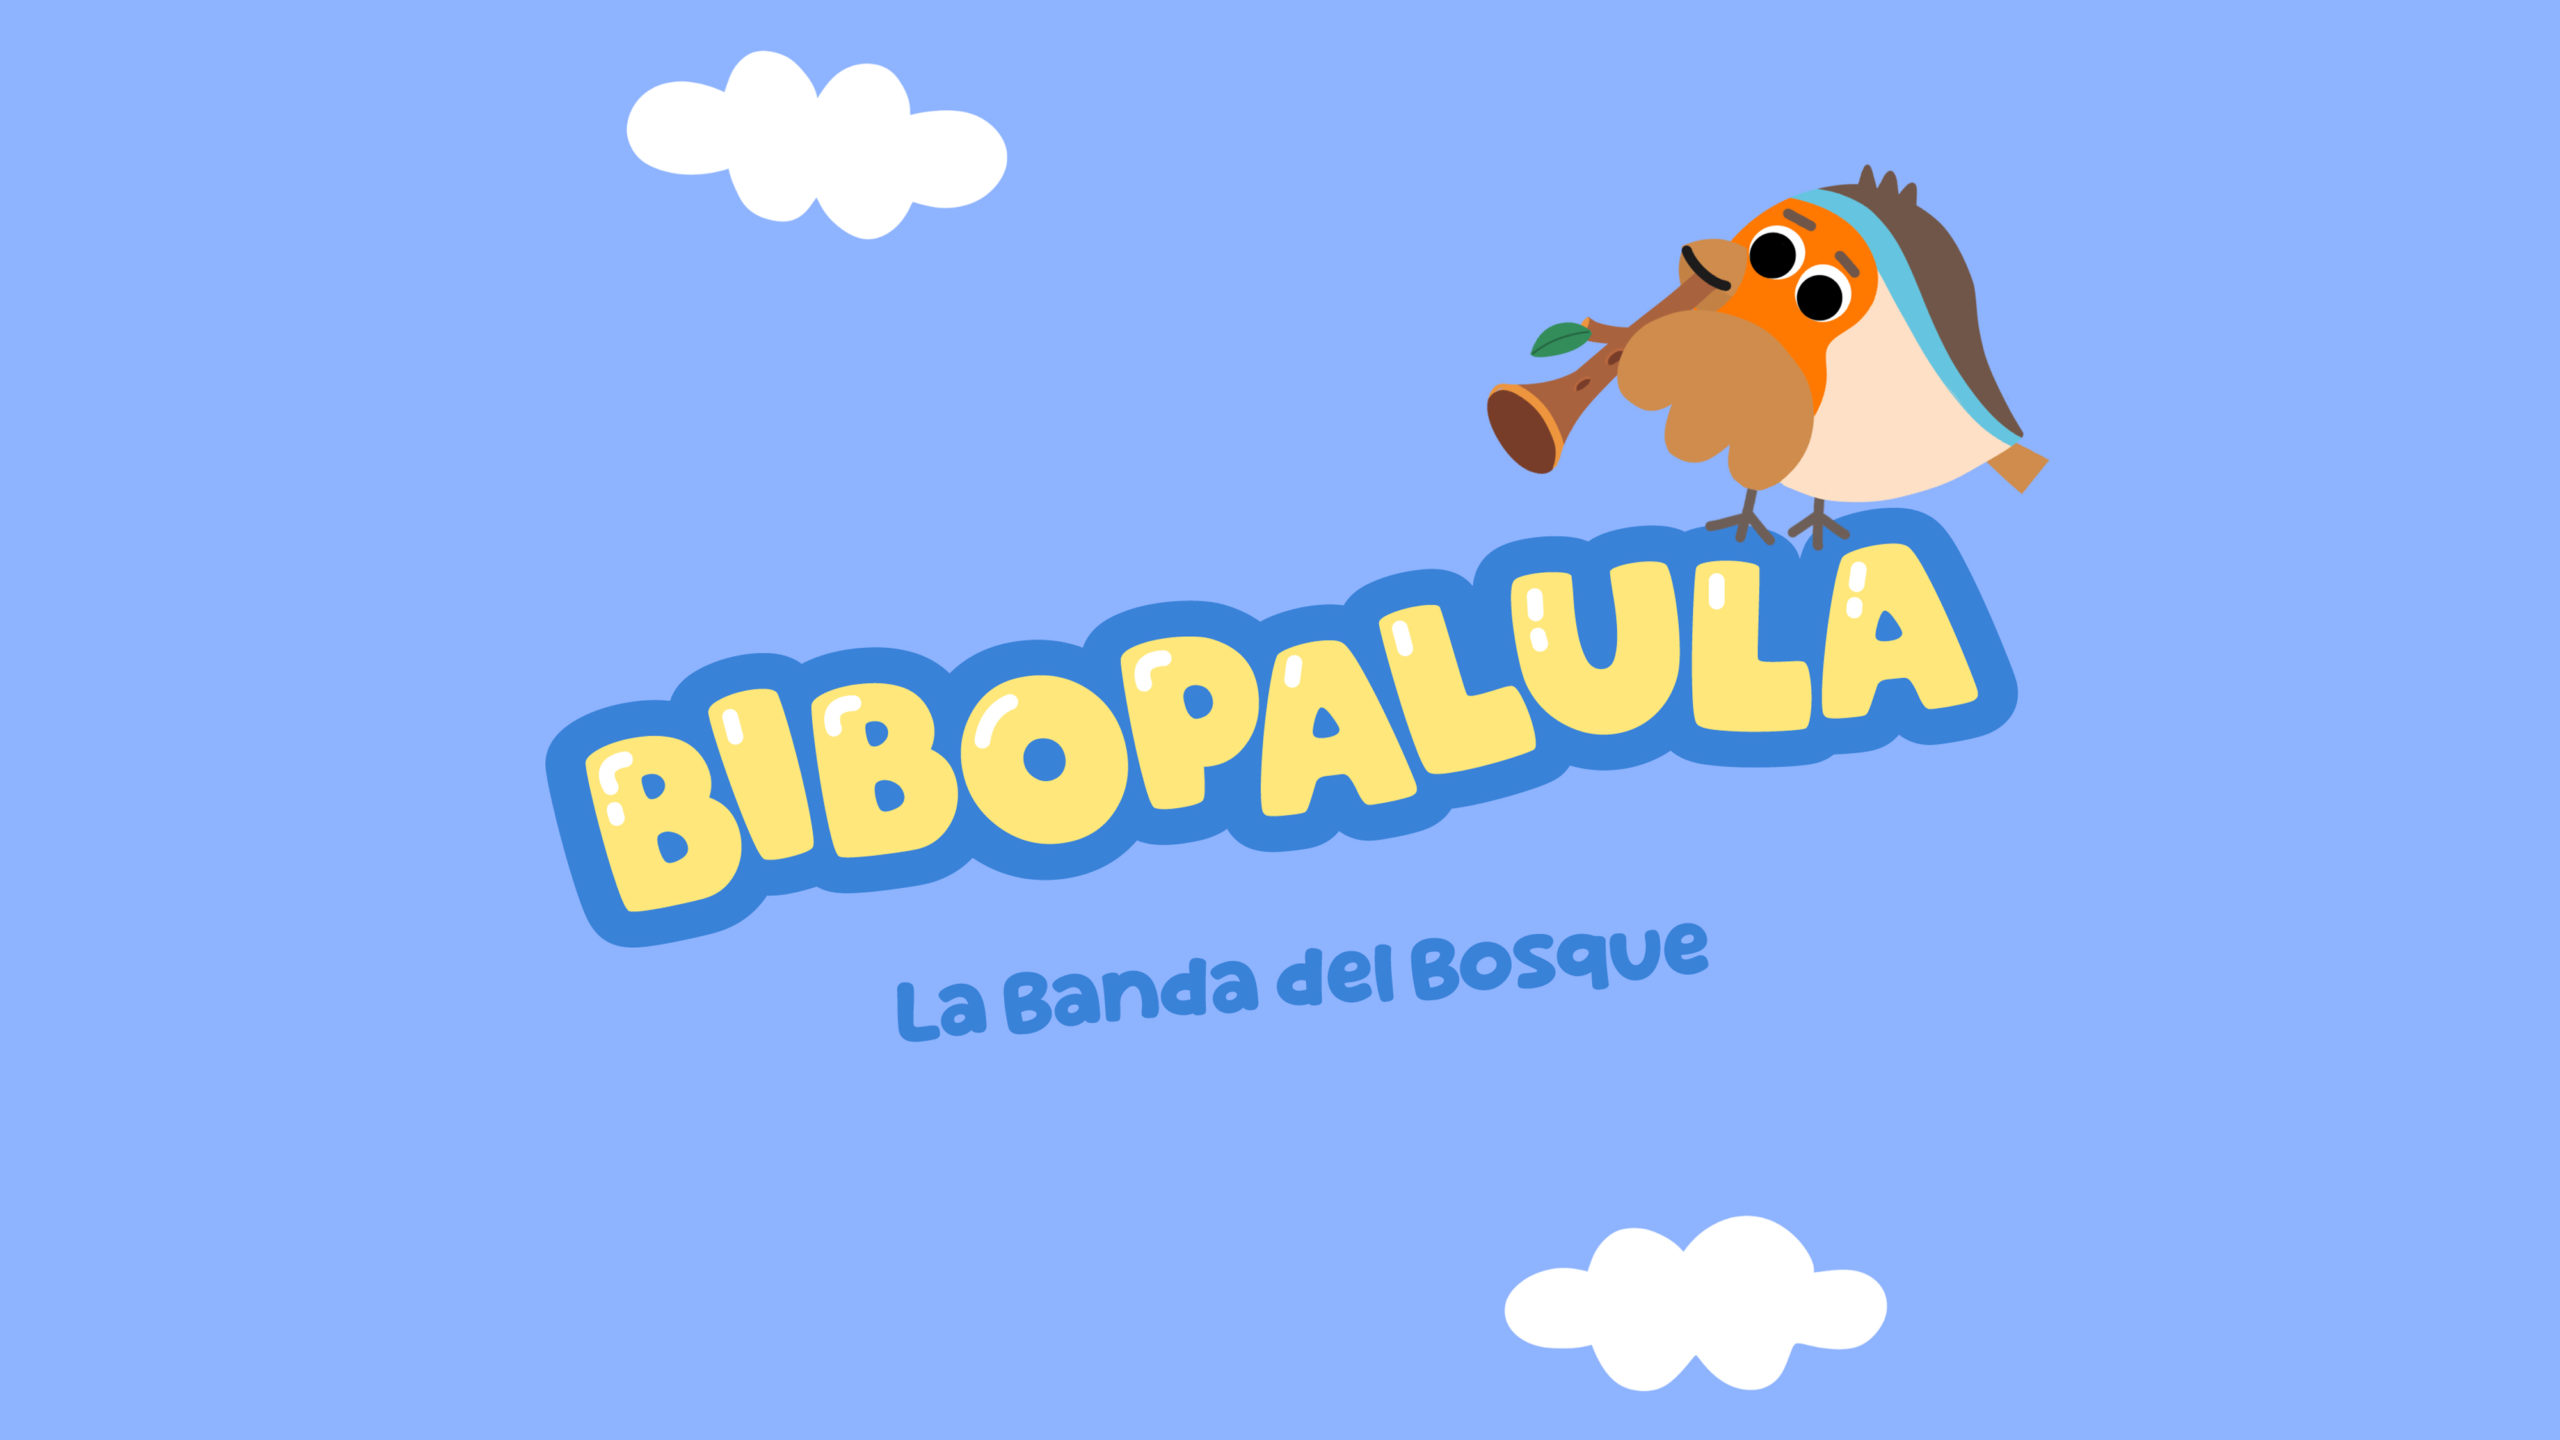 Bibopalula